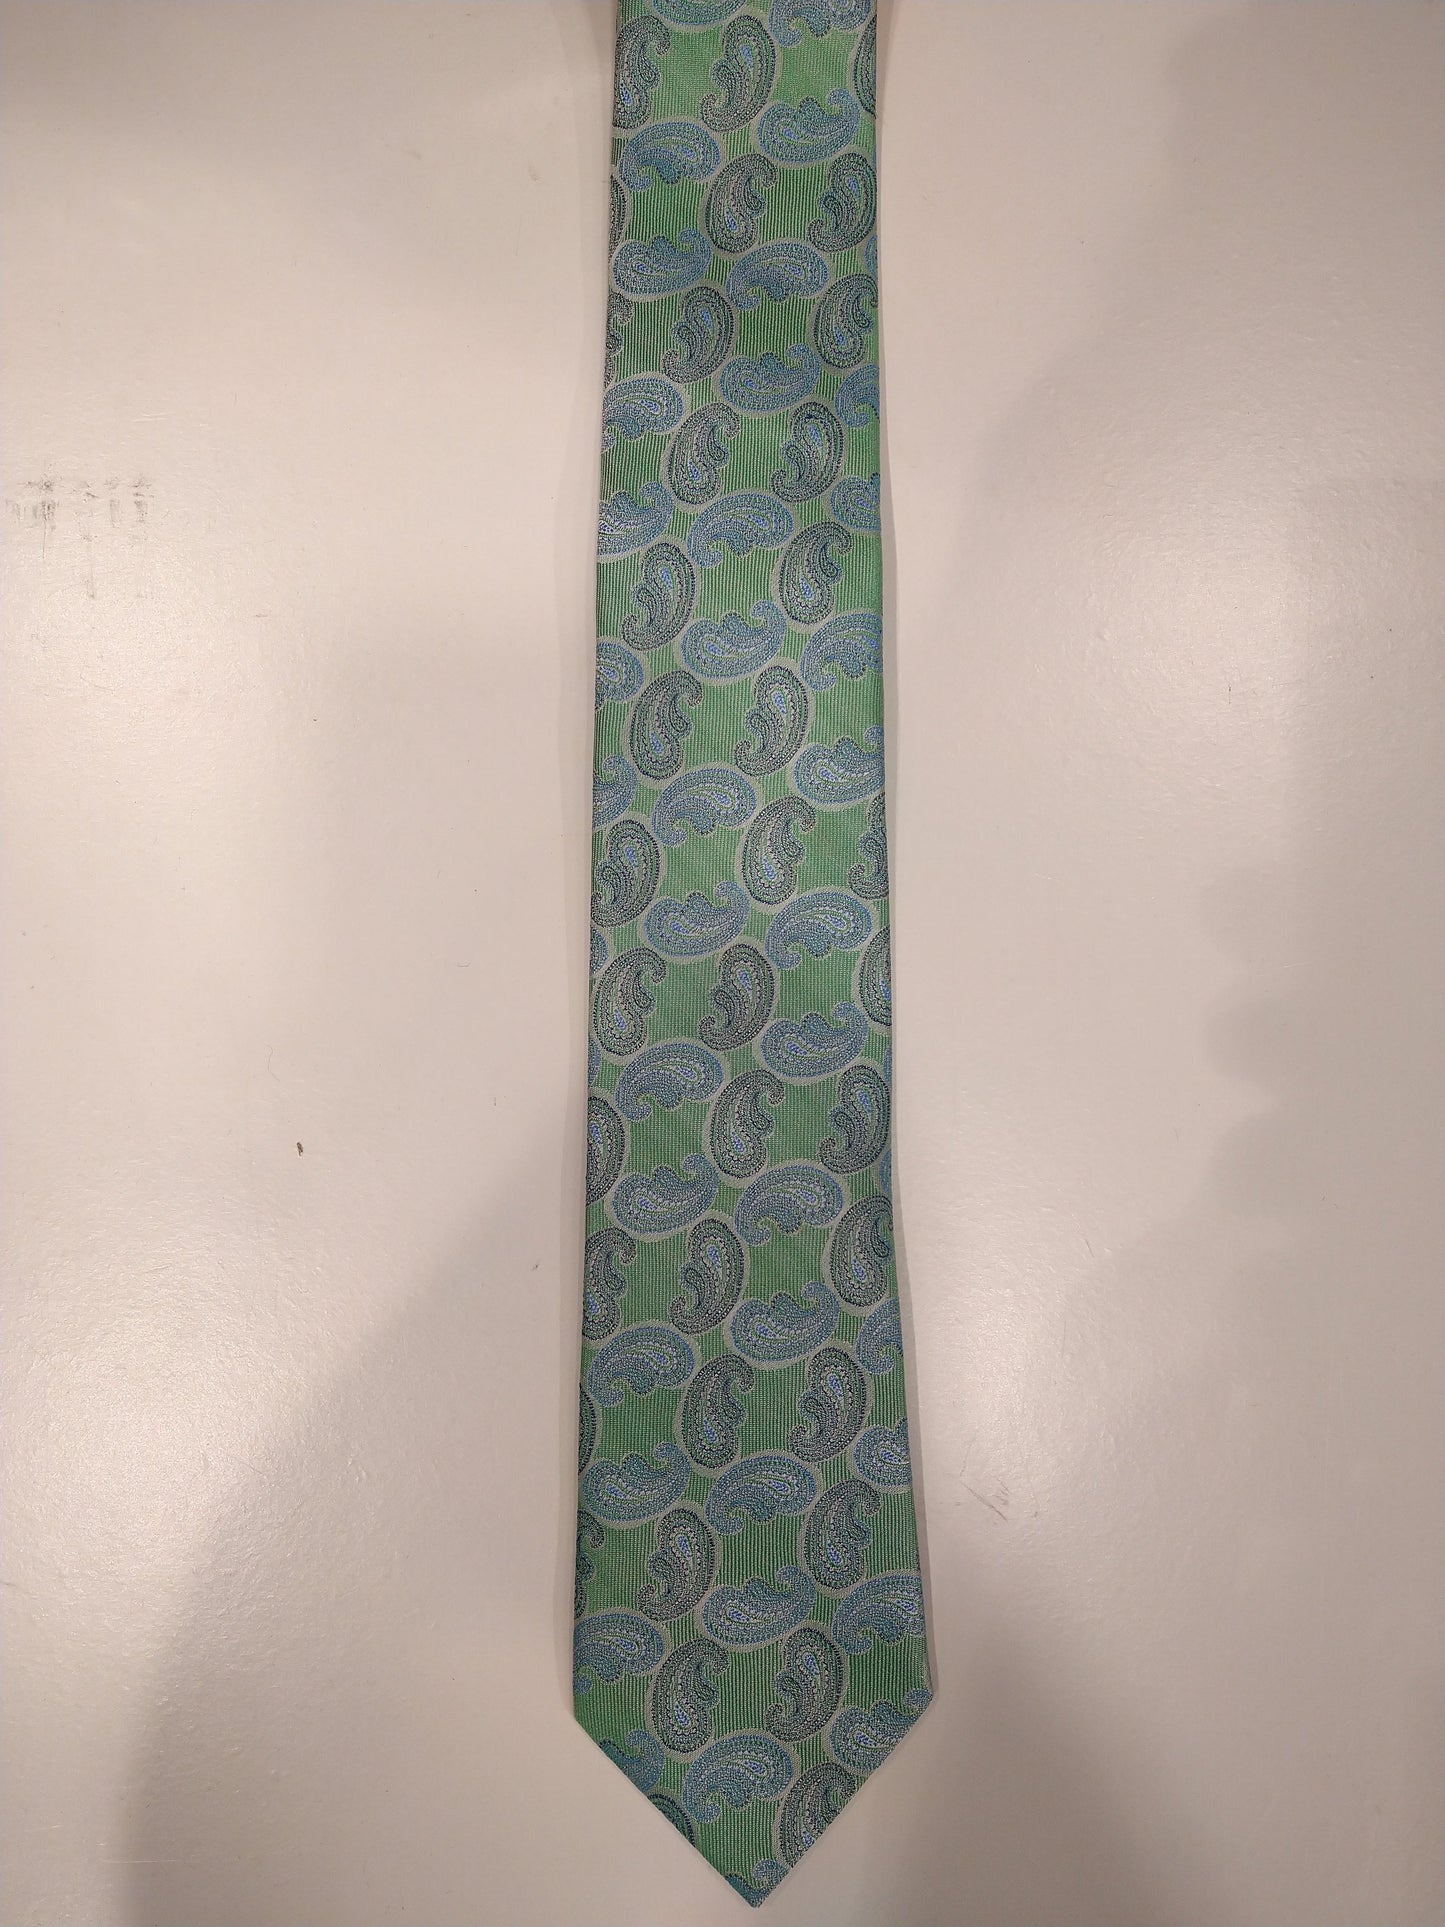 Max Goodman zijde stropdas. Blauw groen motief.